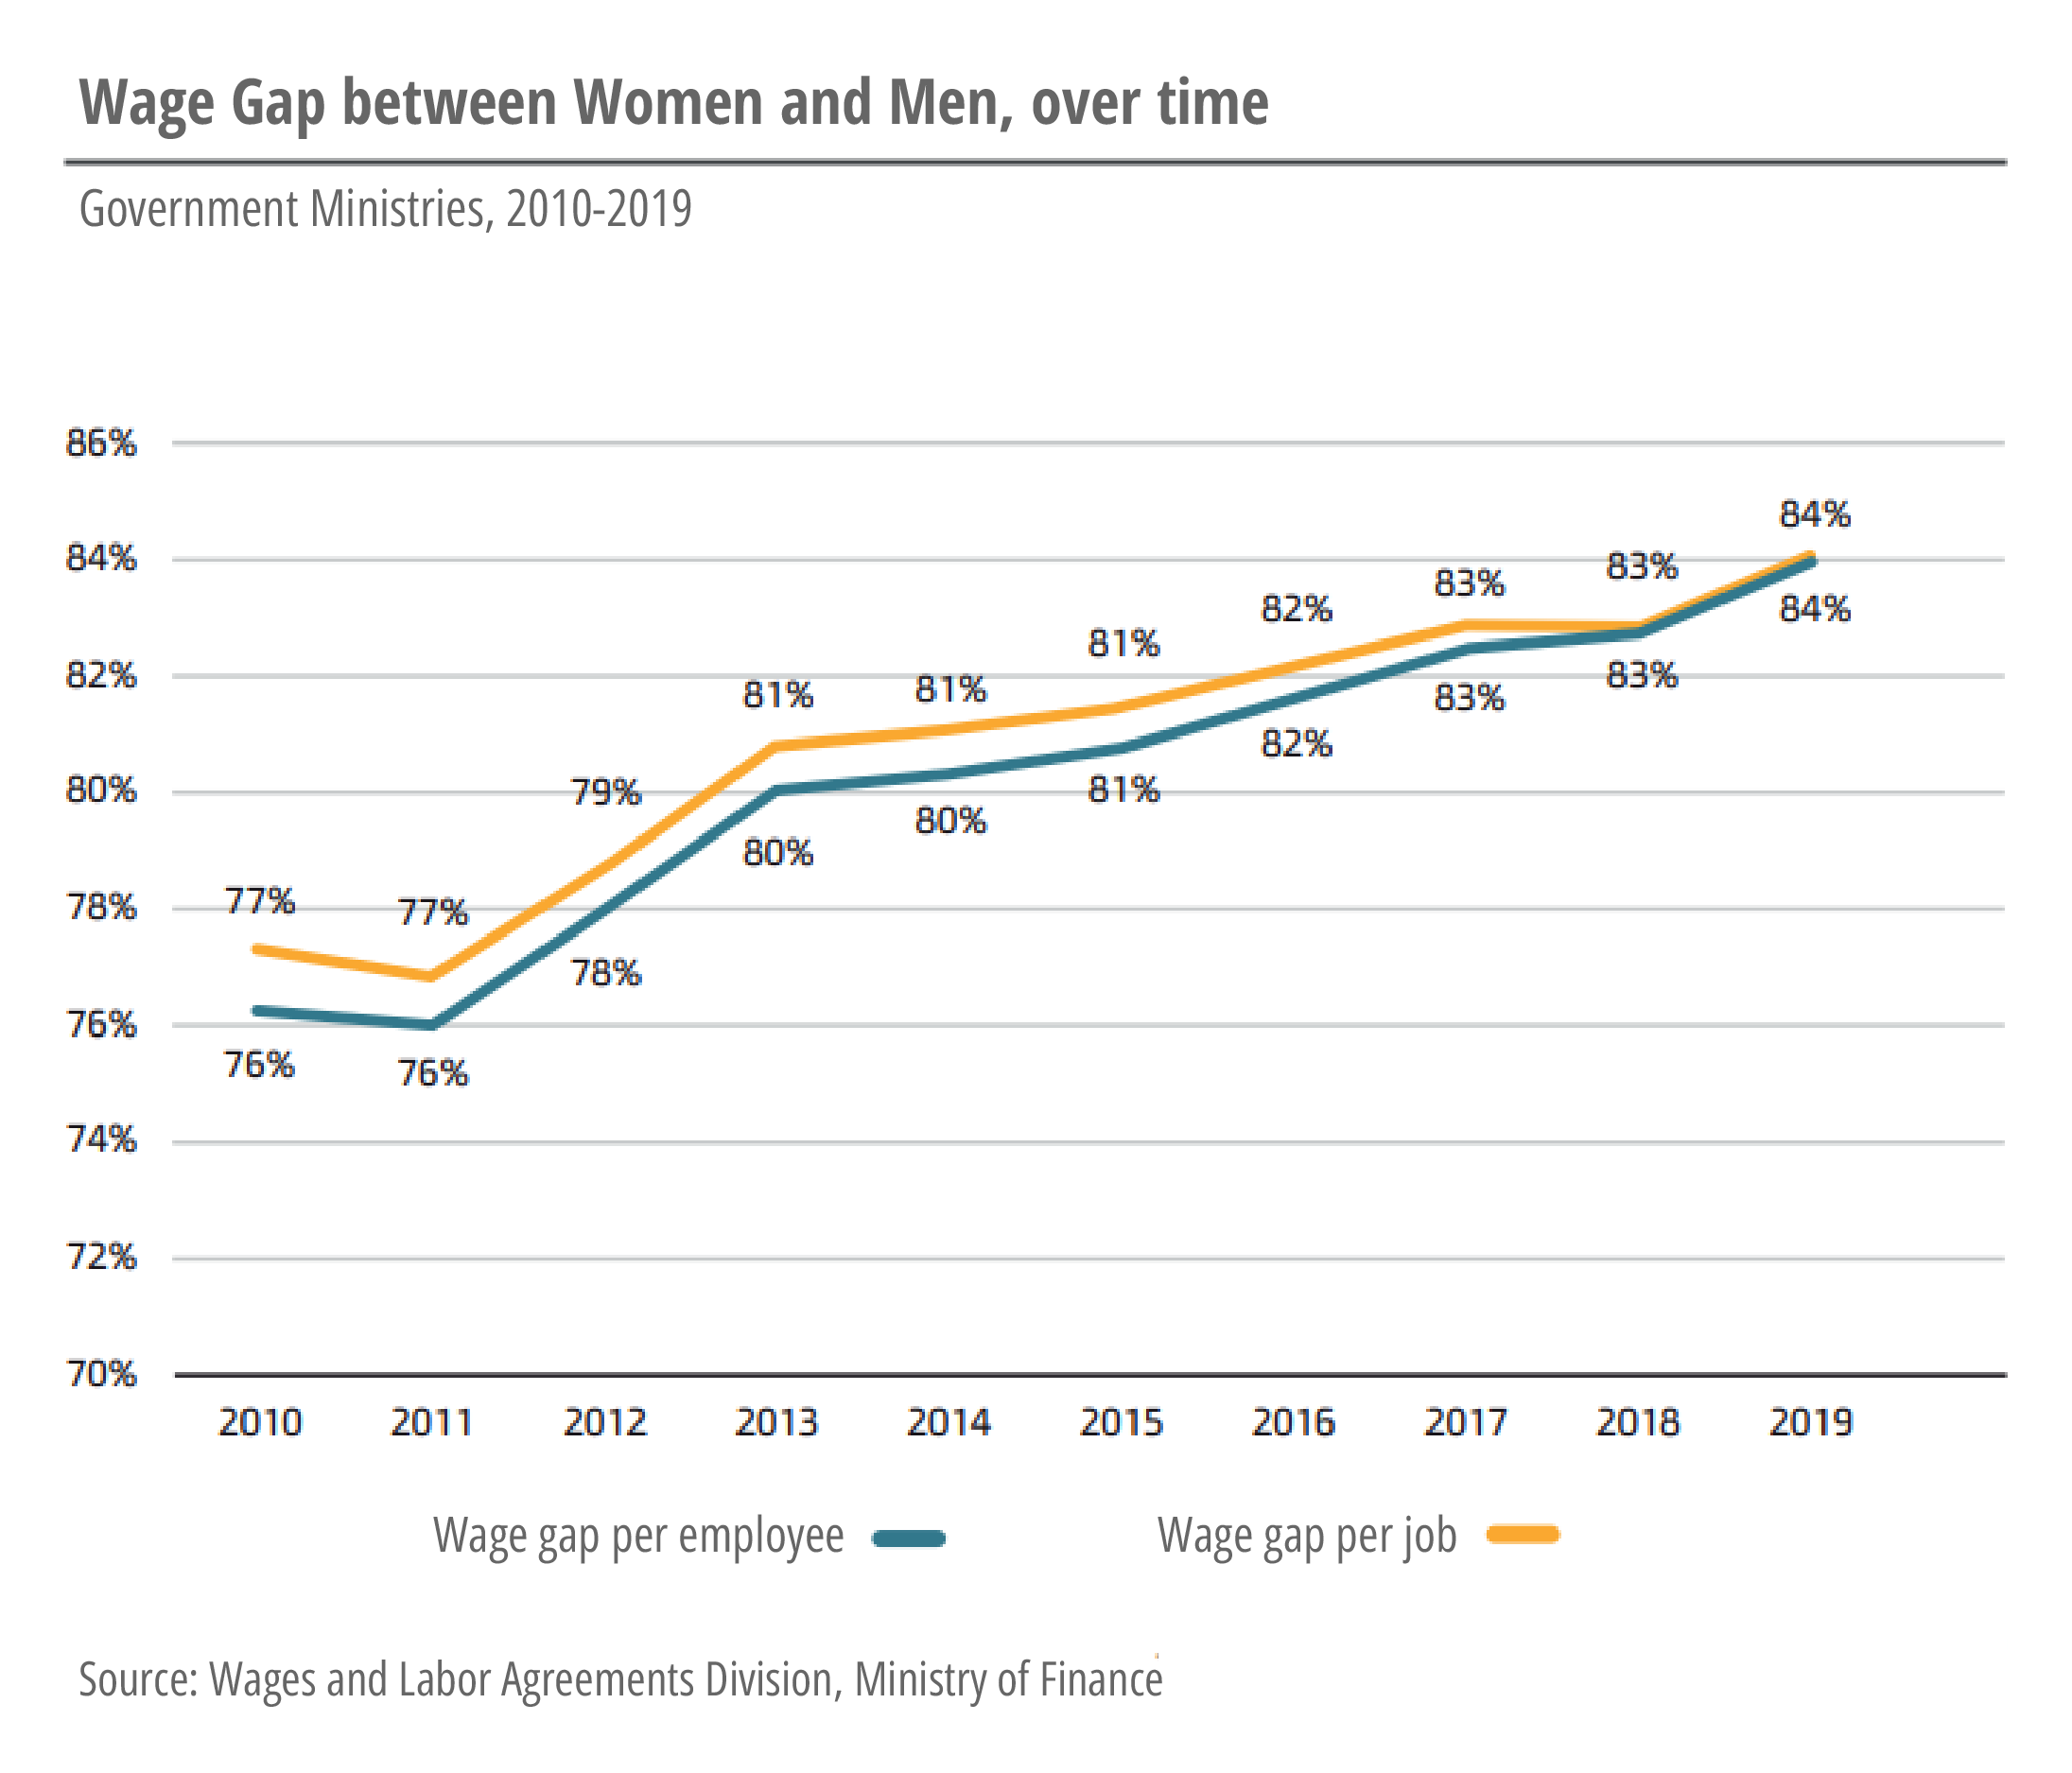 Wage gaps between women and men